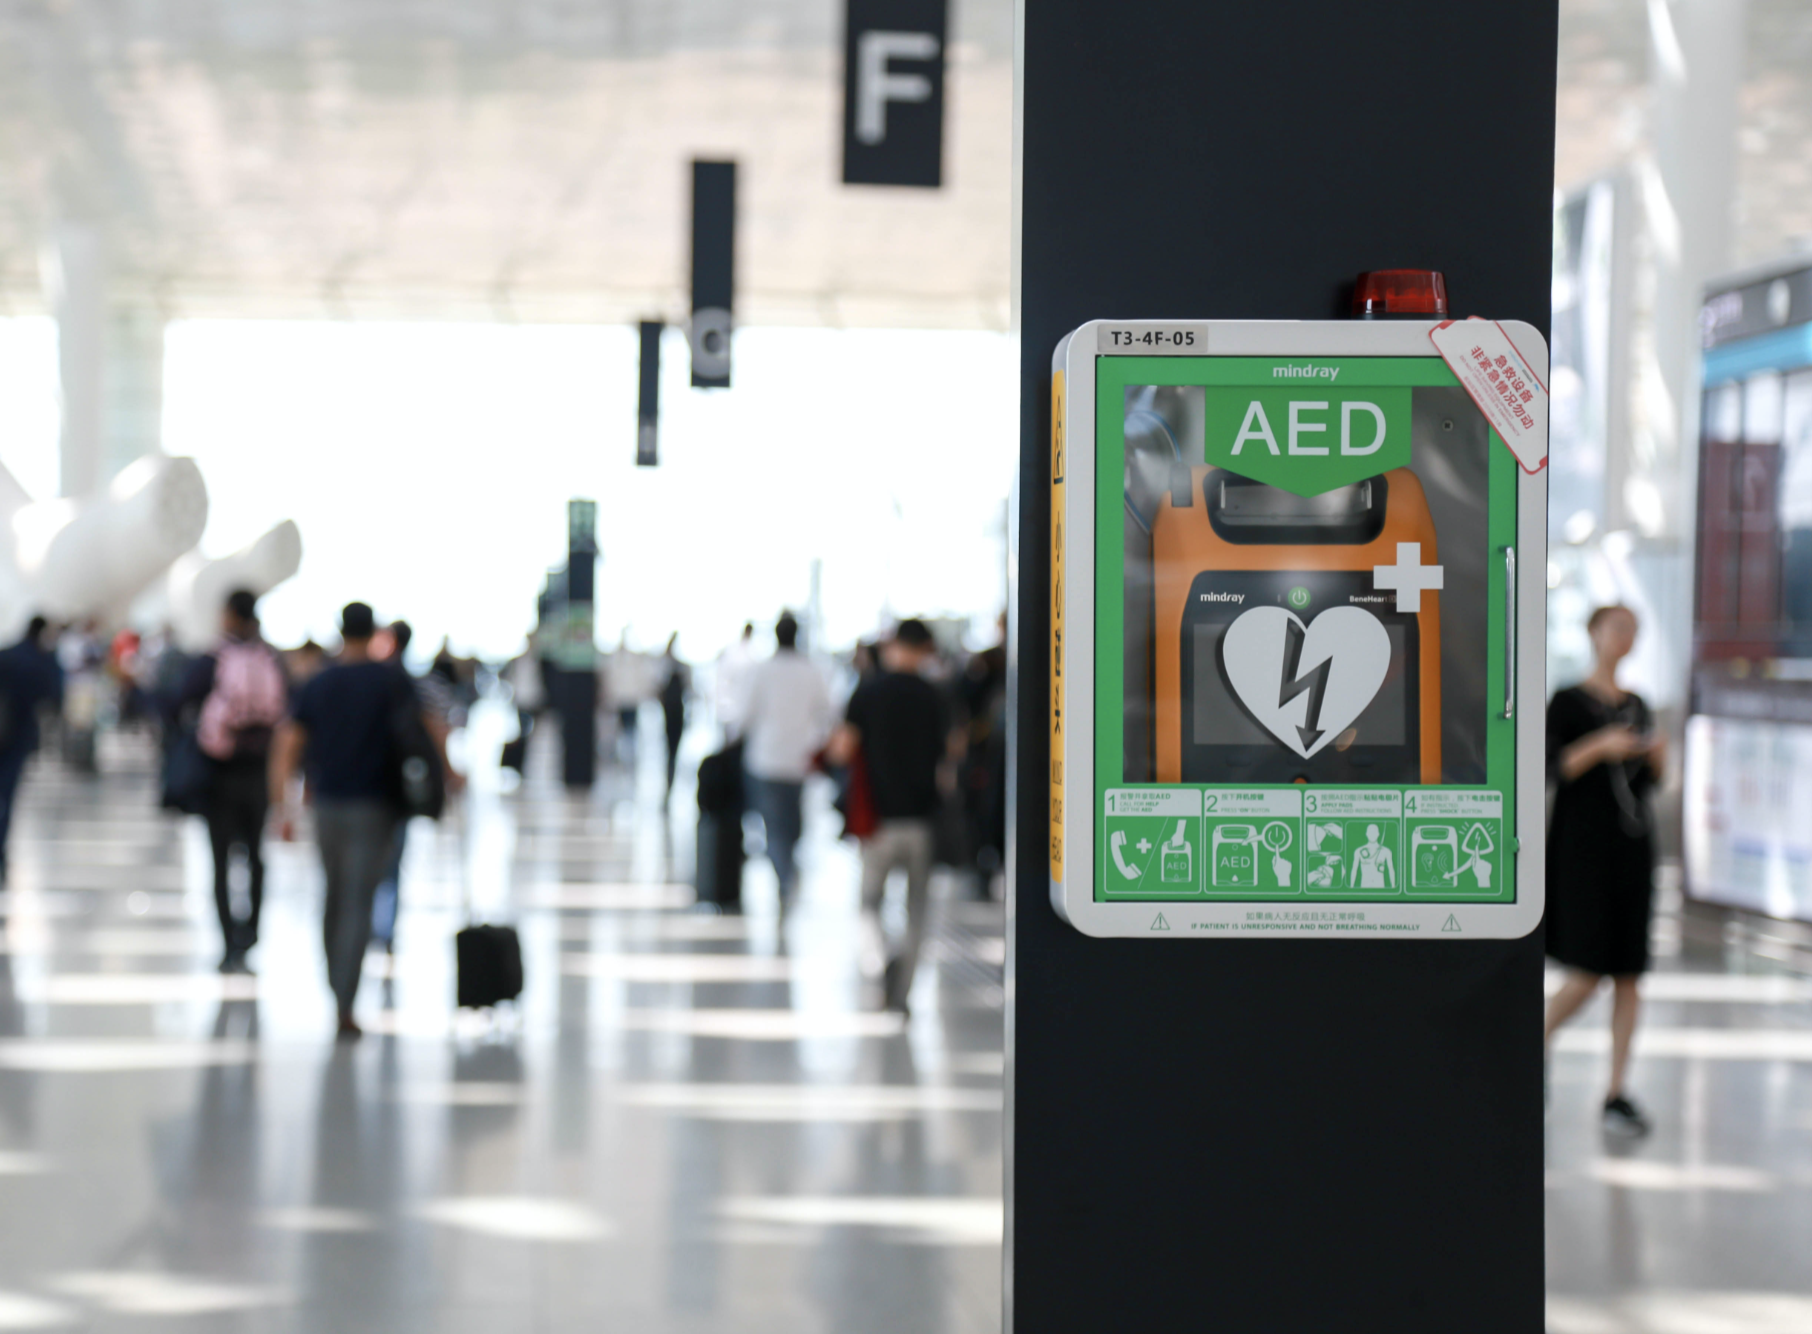 深圳机场将VR技术创新引入急救技能培训  加快构建AED覆盖率全国最高、急救培训全员覆盖的机场急救体系